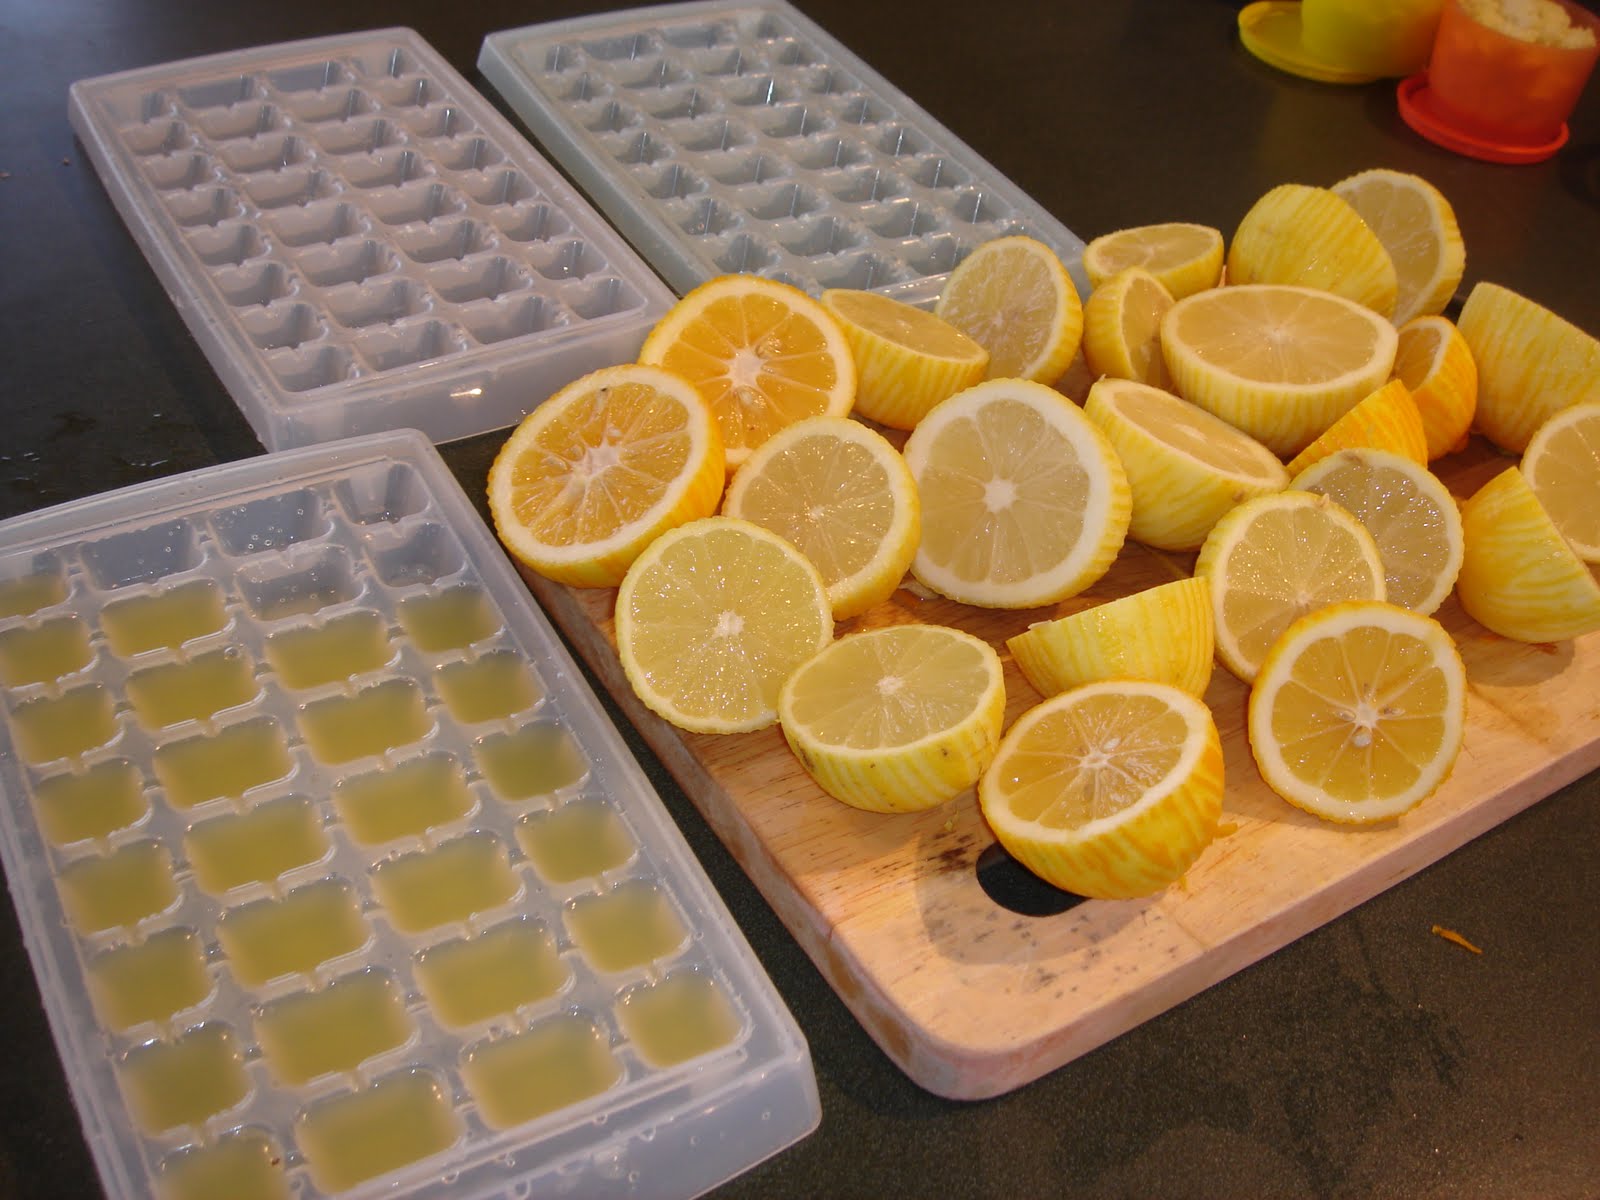 Как сохранить лимоны в домашних условиях